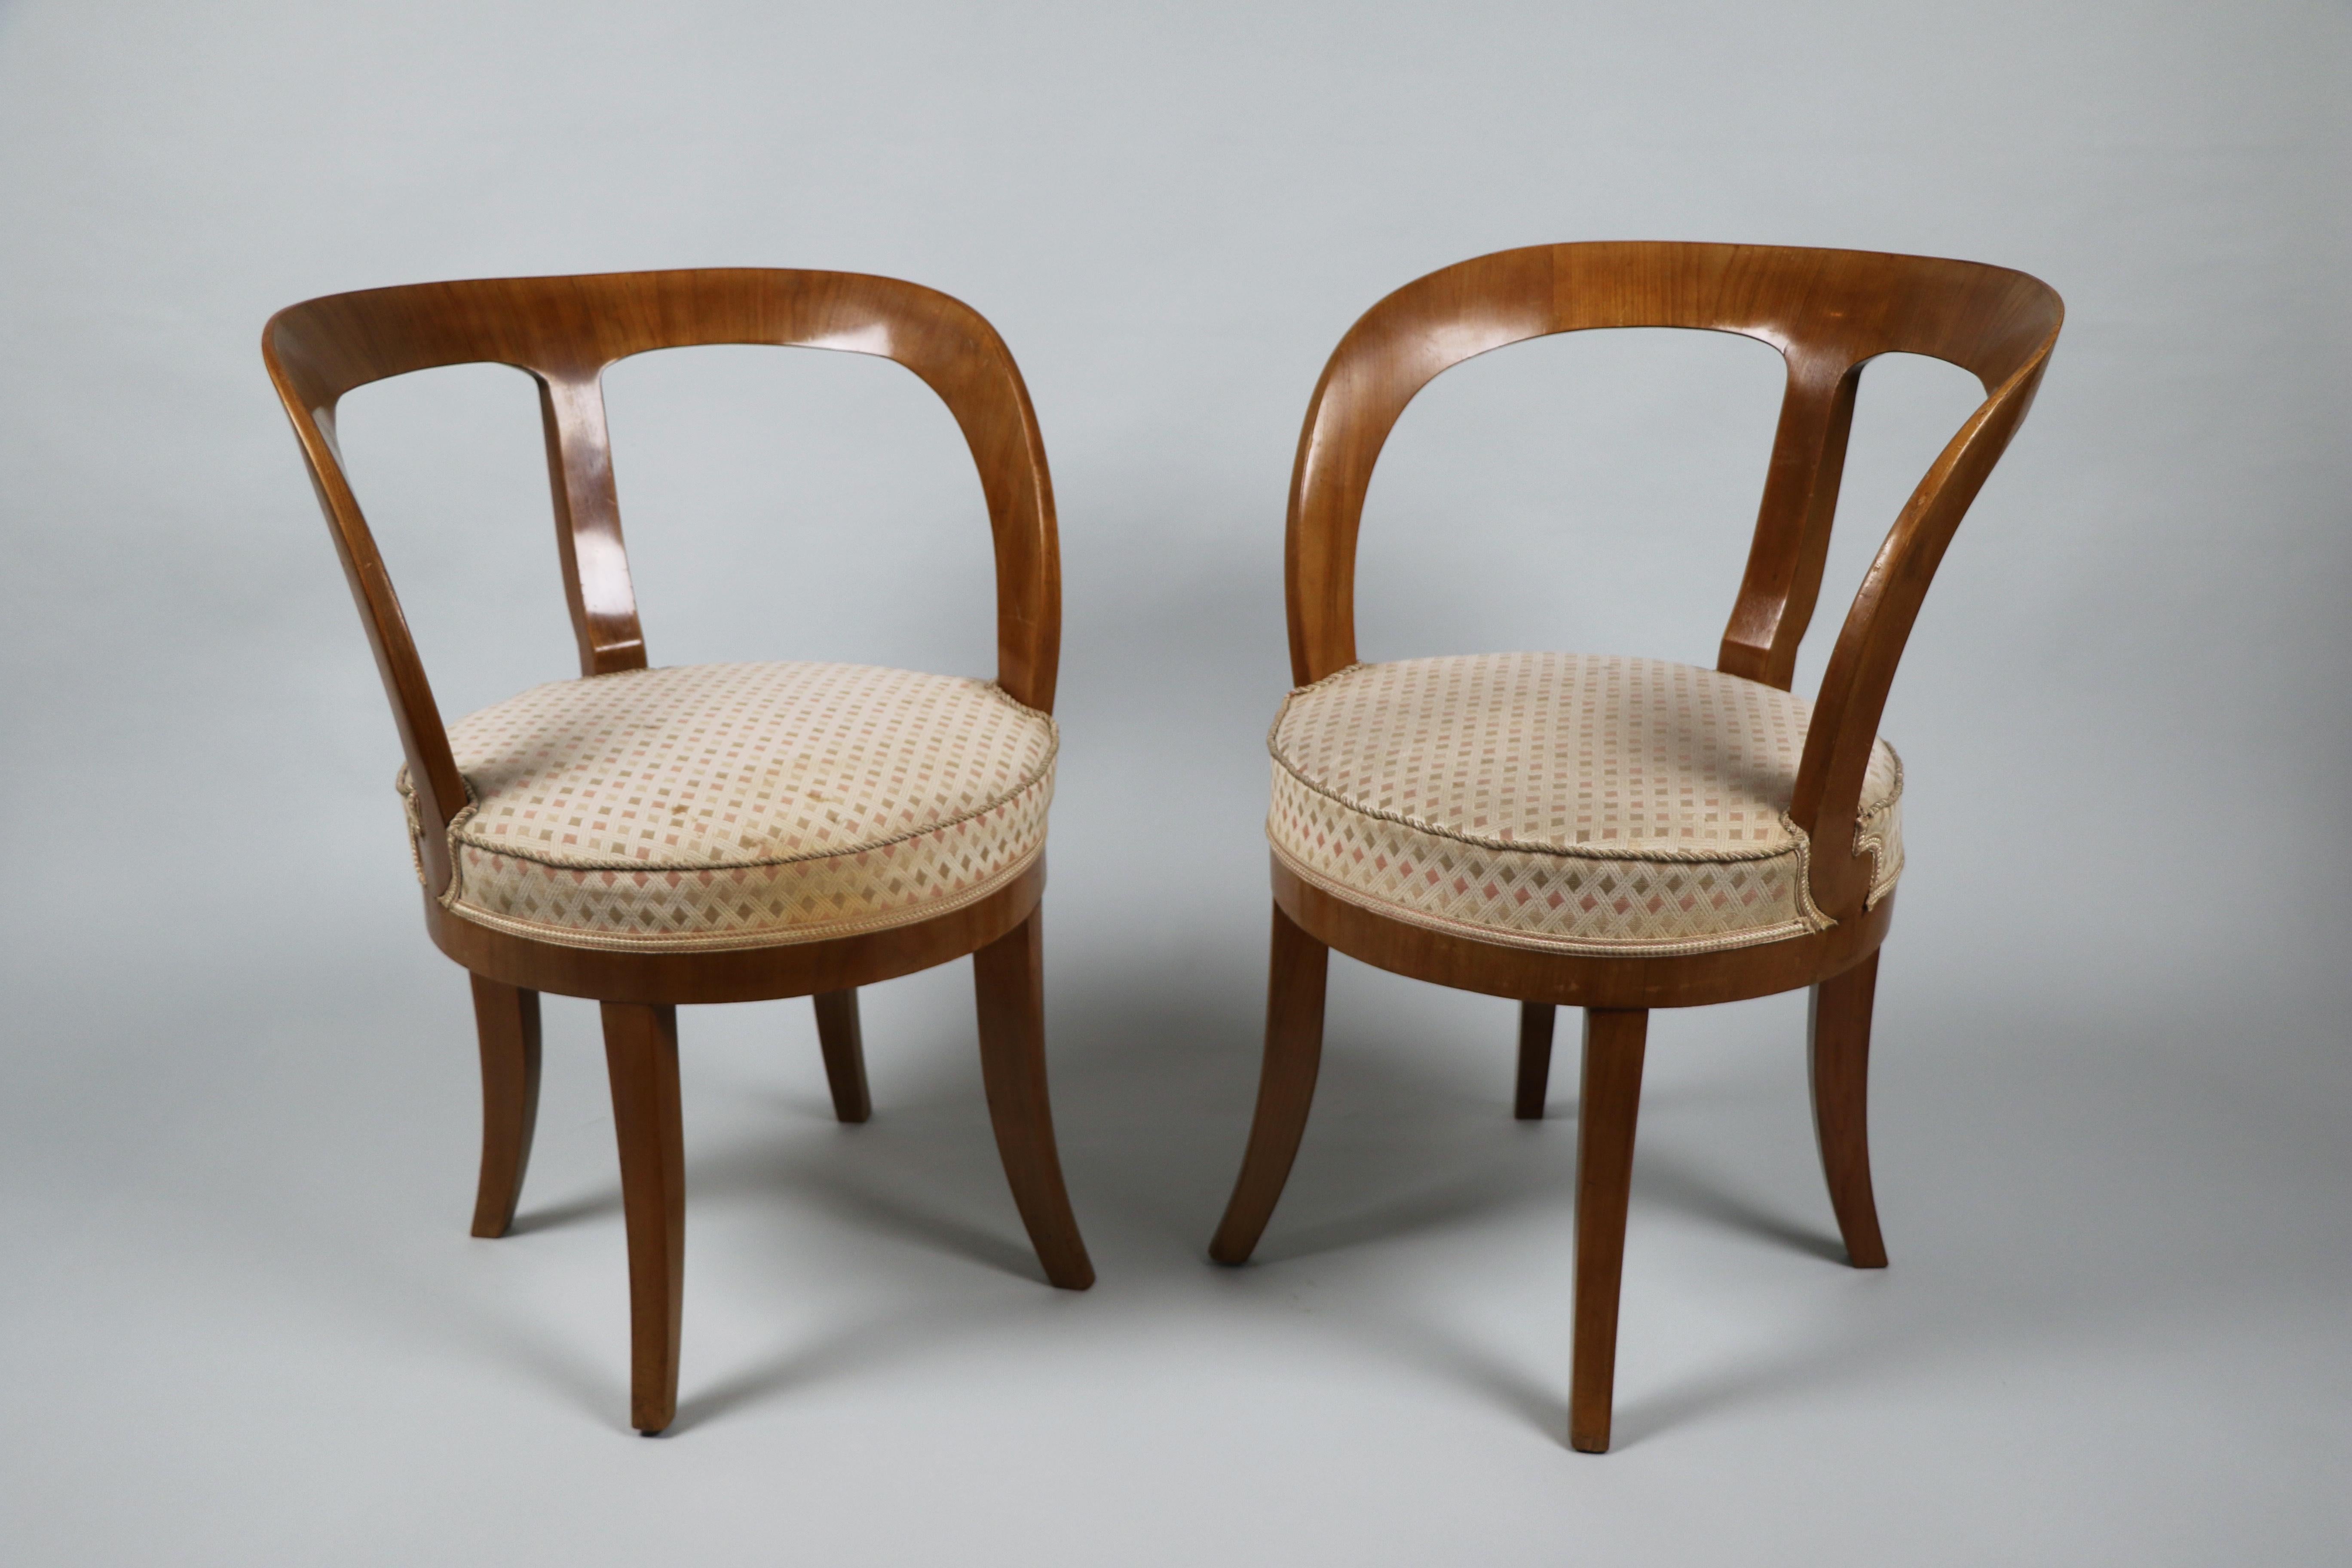 Diese schönen und seltenen Biedermeier-Stühle wurden um 1825 in Wien hergestellt.

Die Stücke des Wiener Biedermeier zeichnen sich durch ihre raffinierten Proportionen, ihr seltenes und raffiniertes Design und ihre exzellente Handwerkskunst aus und